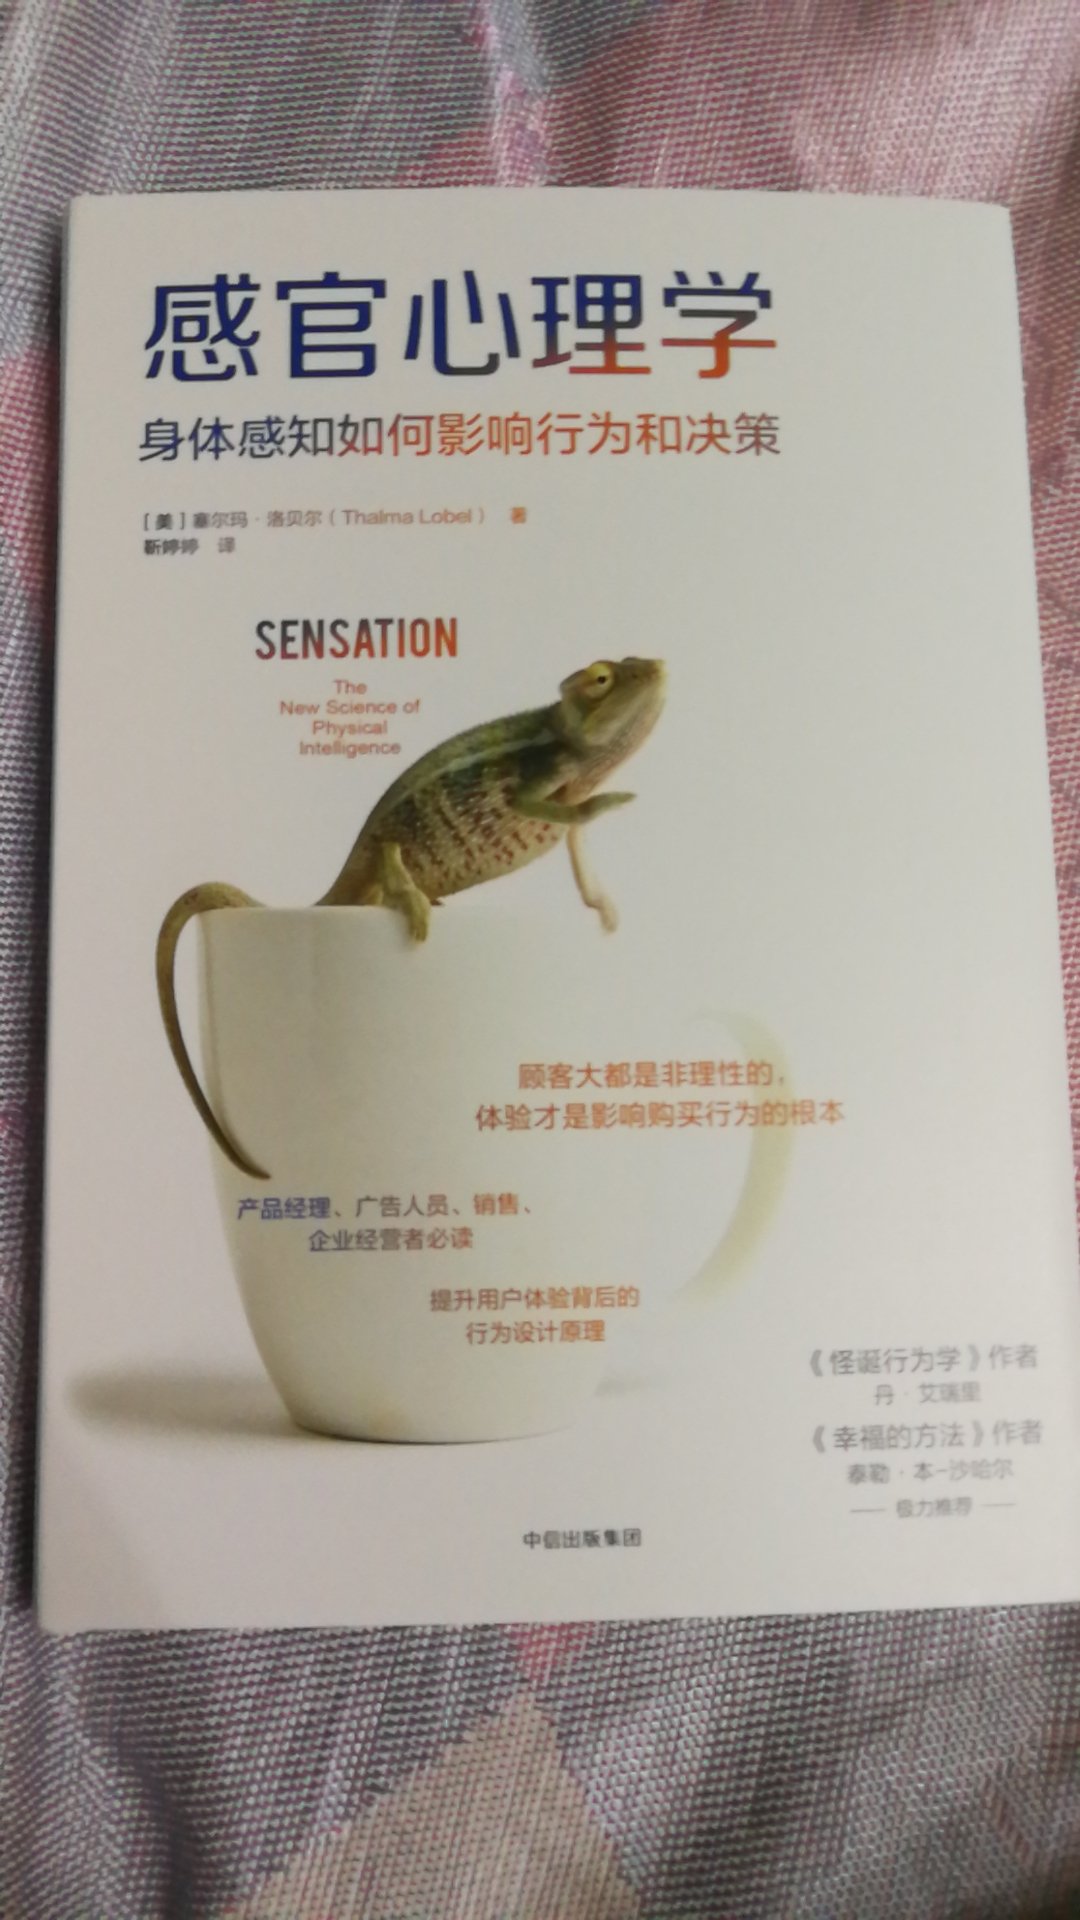 特别喜欢封面上的小蜥蜴，所以买这本书来看。